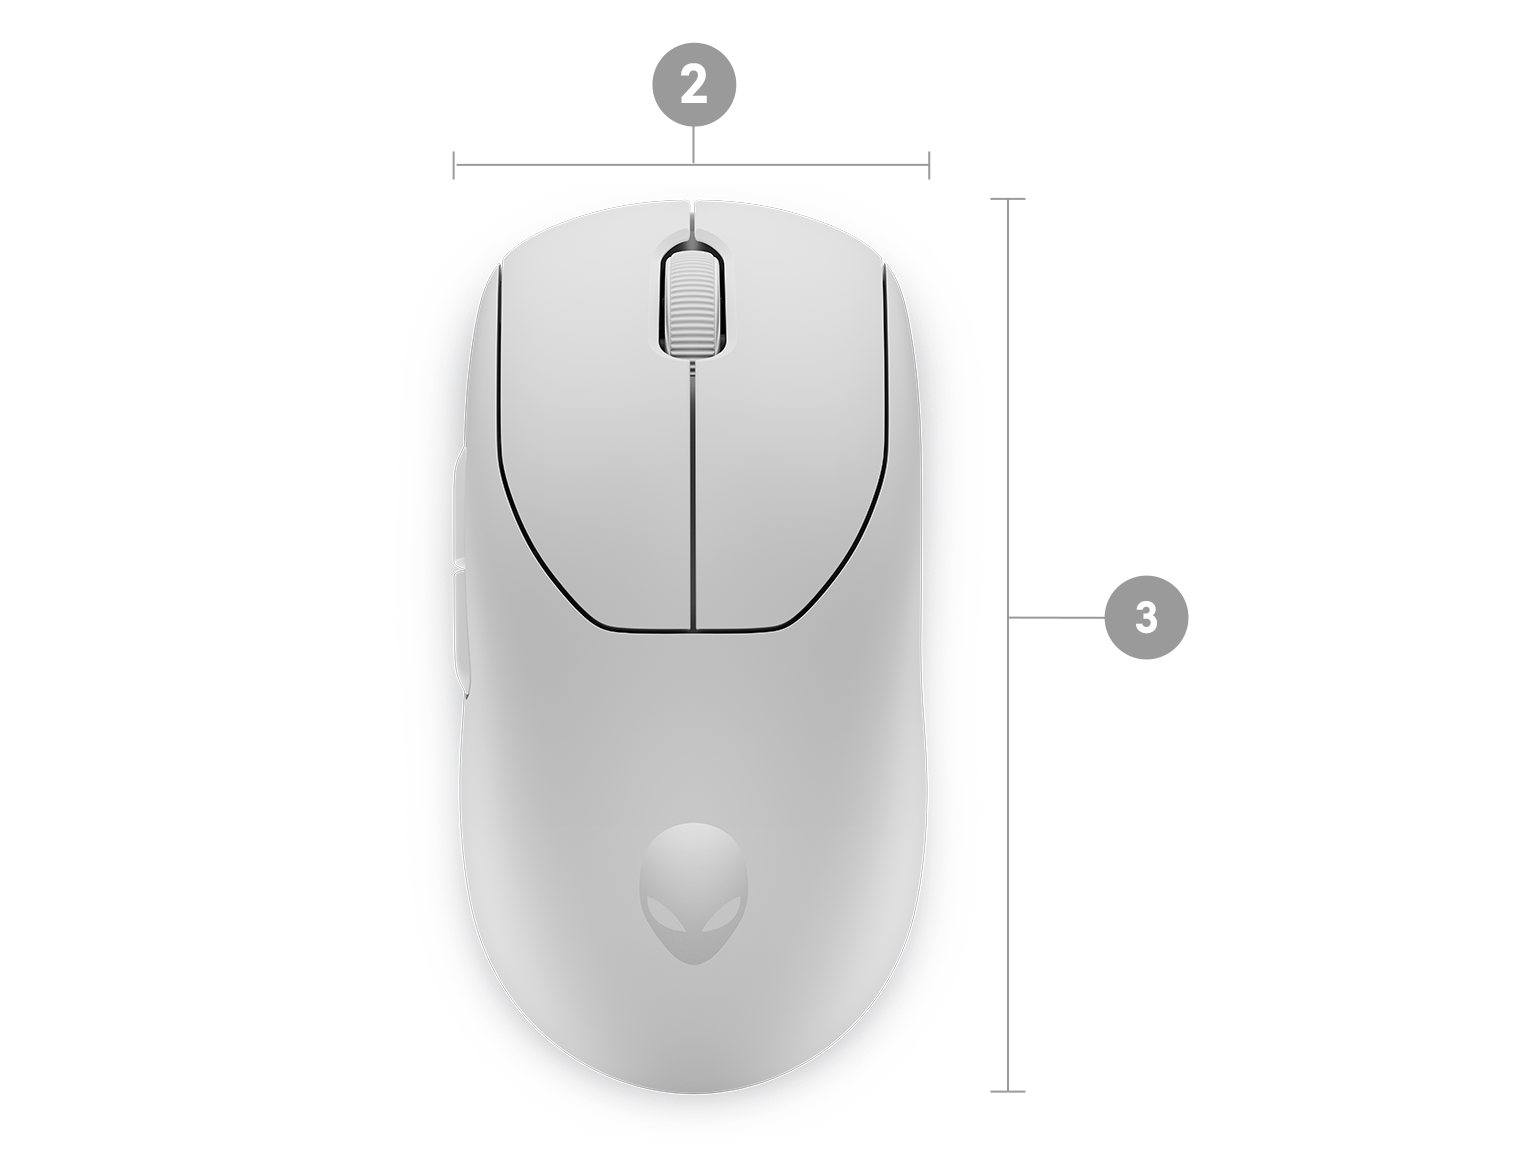 Mouse senza fili per il gaming Dell Alienware Pro con numeri da 1 a 3 che indicano le dimensioni e il peso del prodotto.